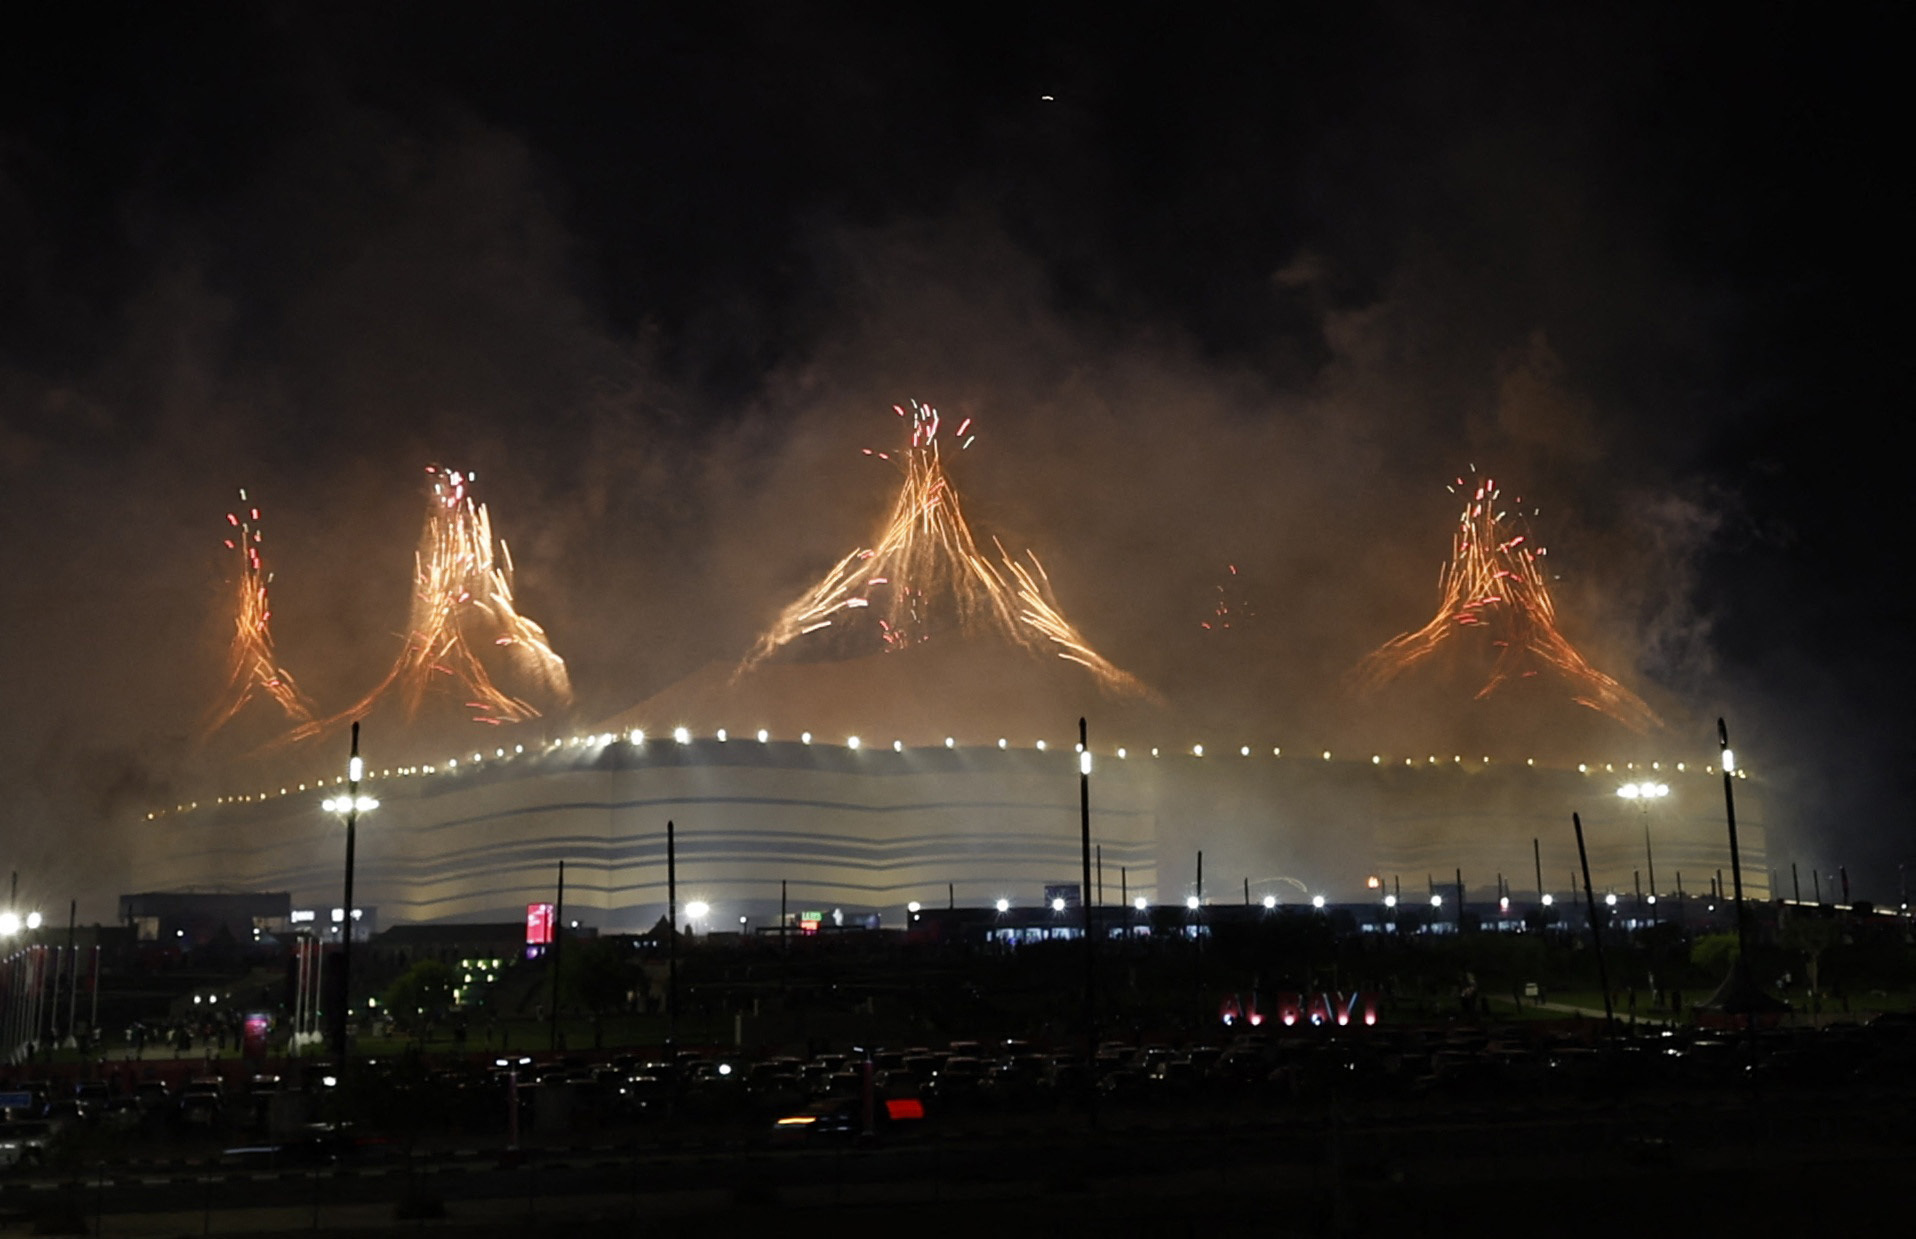 El show de fuegos artificiales fue uno de los últimos actos de la ceremonia de inauguración de Qatar 2022 (REUTERS/Hamad I Mohammed)